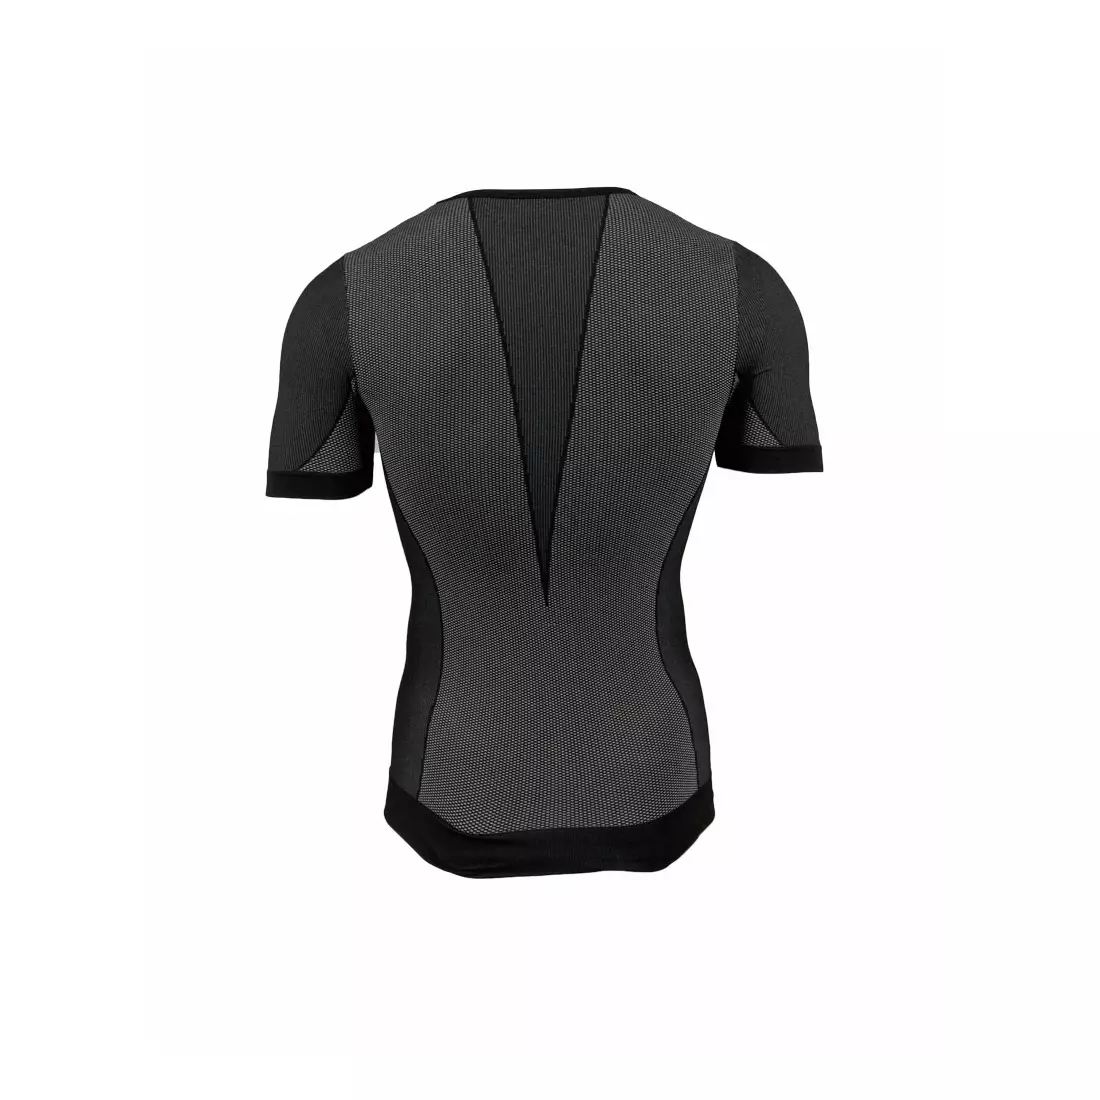 ROGELLI CHASE 070.004 - lenjerie termică - tricou bărbați - culoare: negru